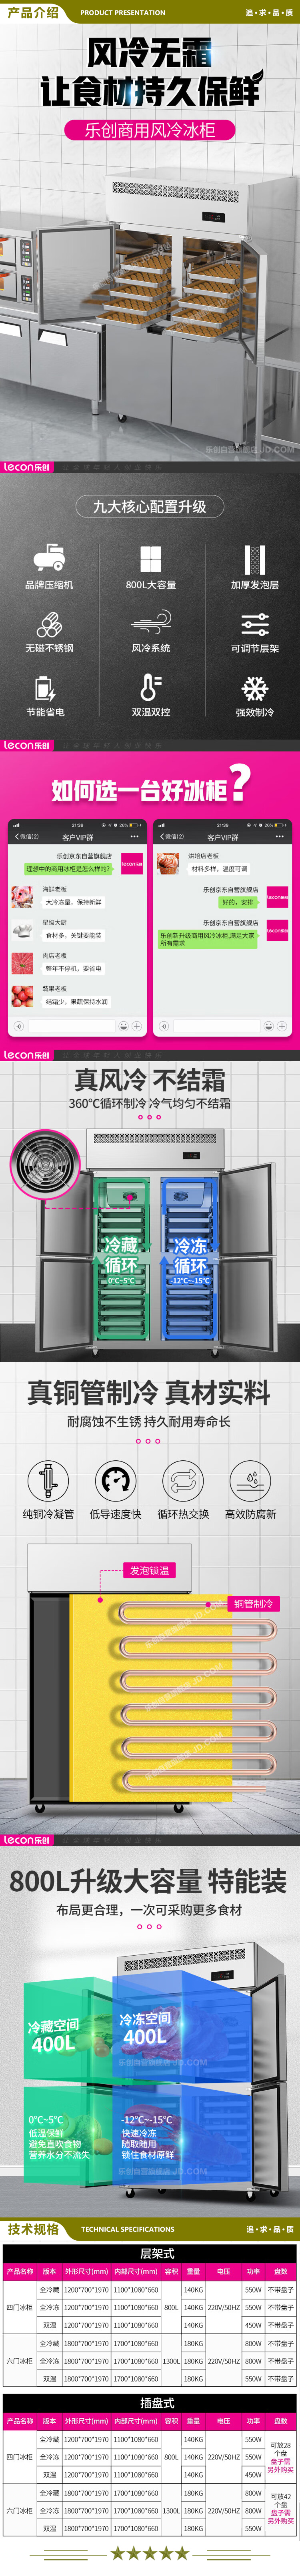 乐创(lecon) LC-LMBG01 双温商用六门冰柜厨房冰箱双温冷藏冷冻餐饮立式后厨保鲜柜冷柜风冷层架式  2.jpg